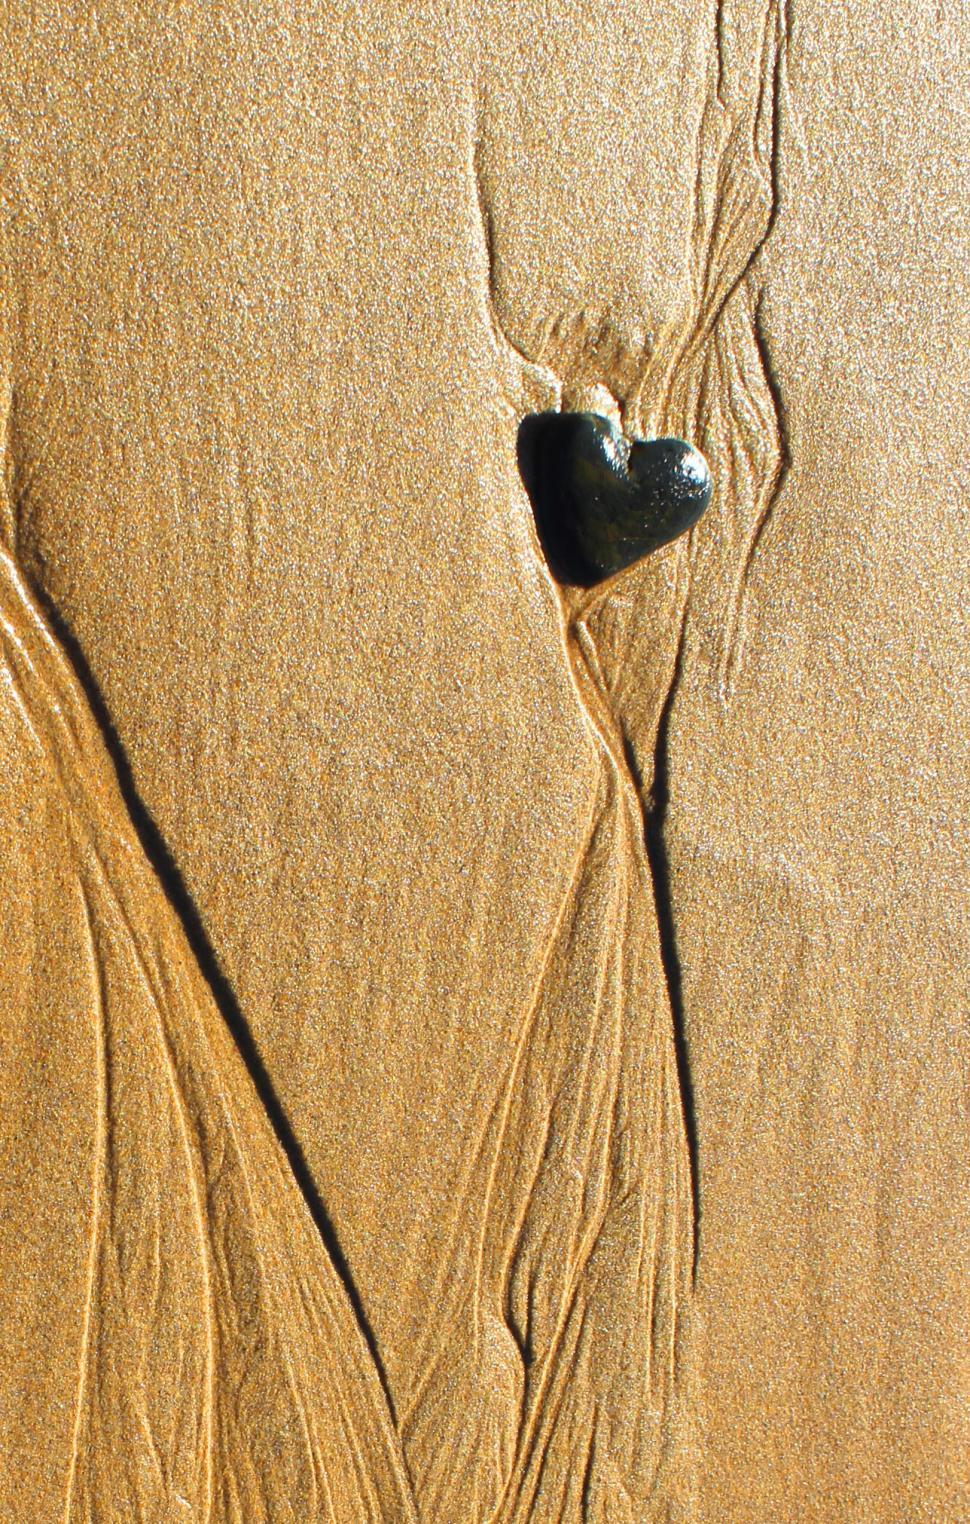 Free Image of Heart-shaped pebble 